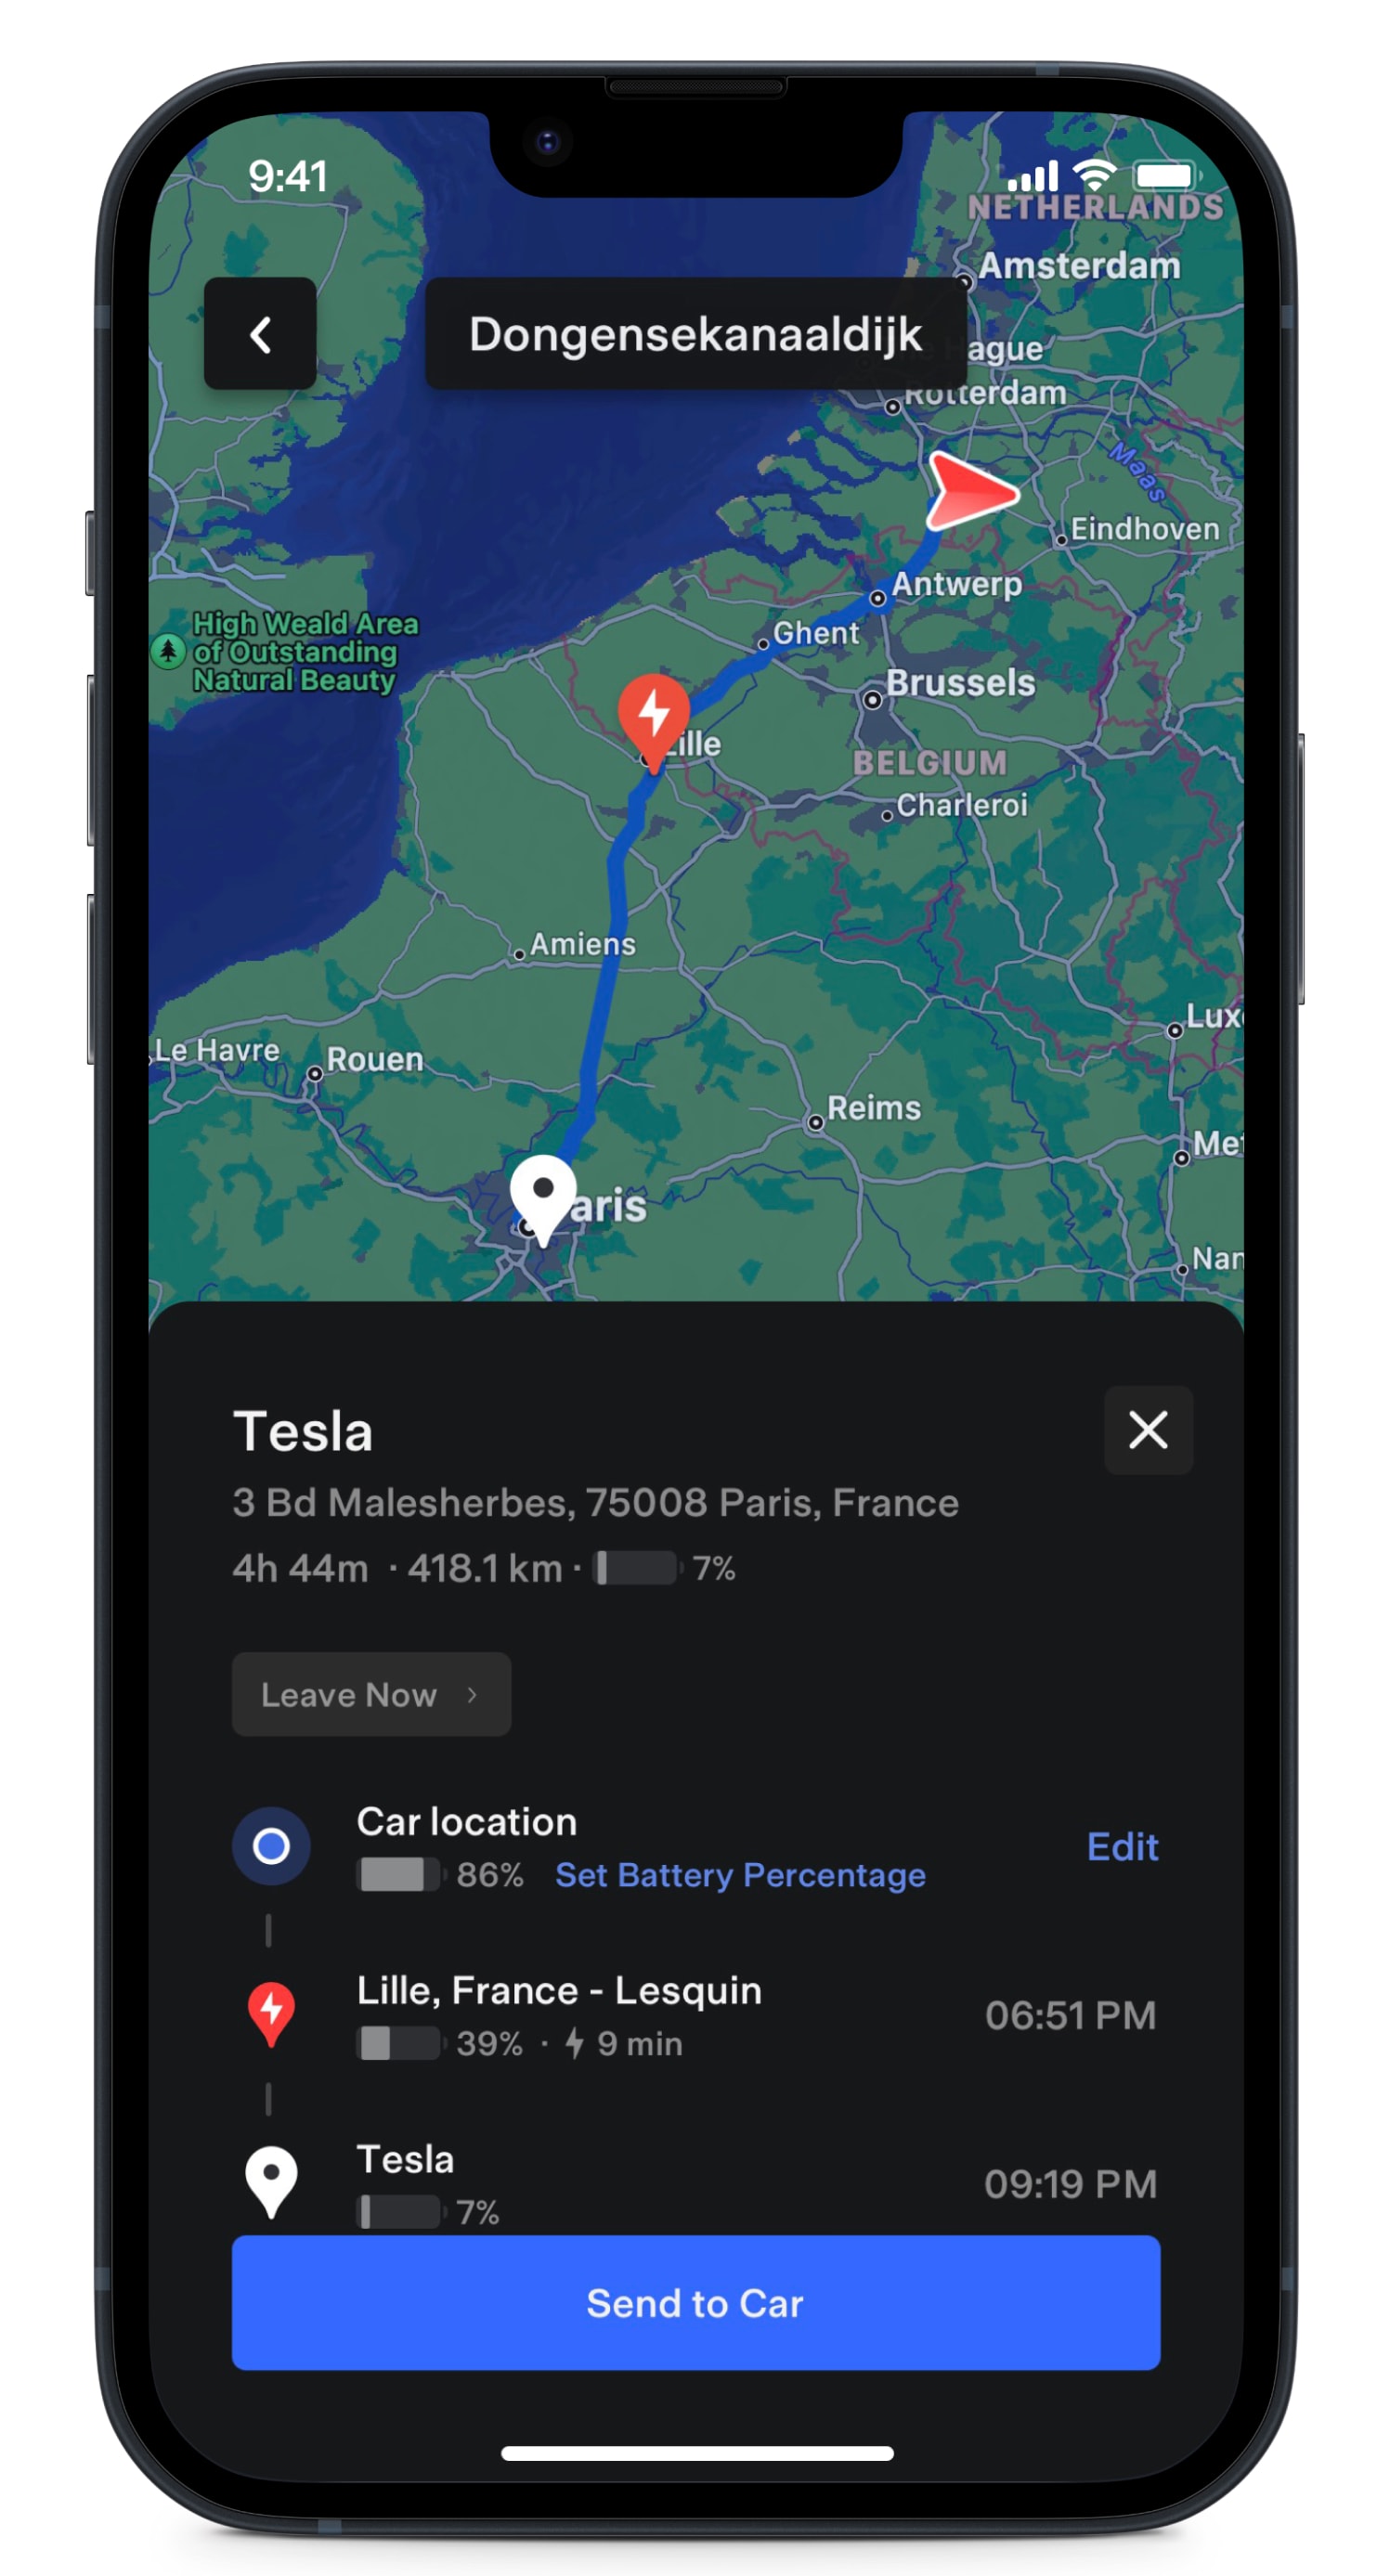 Zaslon Tesla aplikacije, na katerem je prikazan zemljevid poti s postankom za polnjenje na poti. 